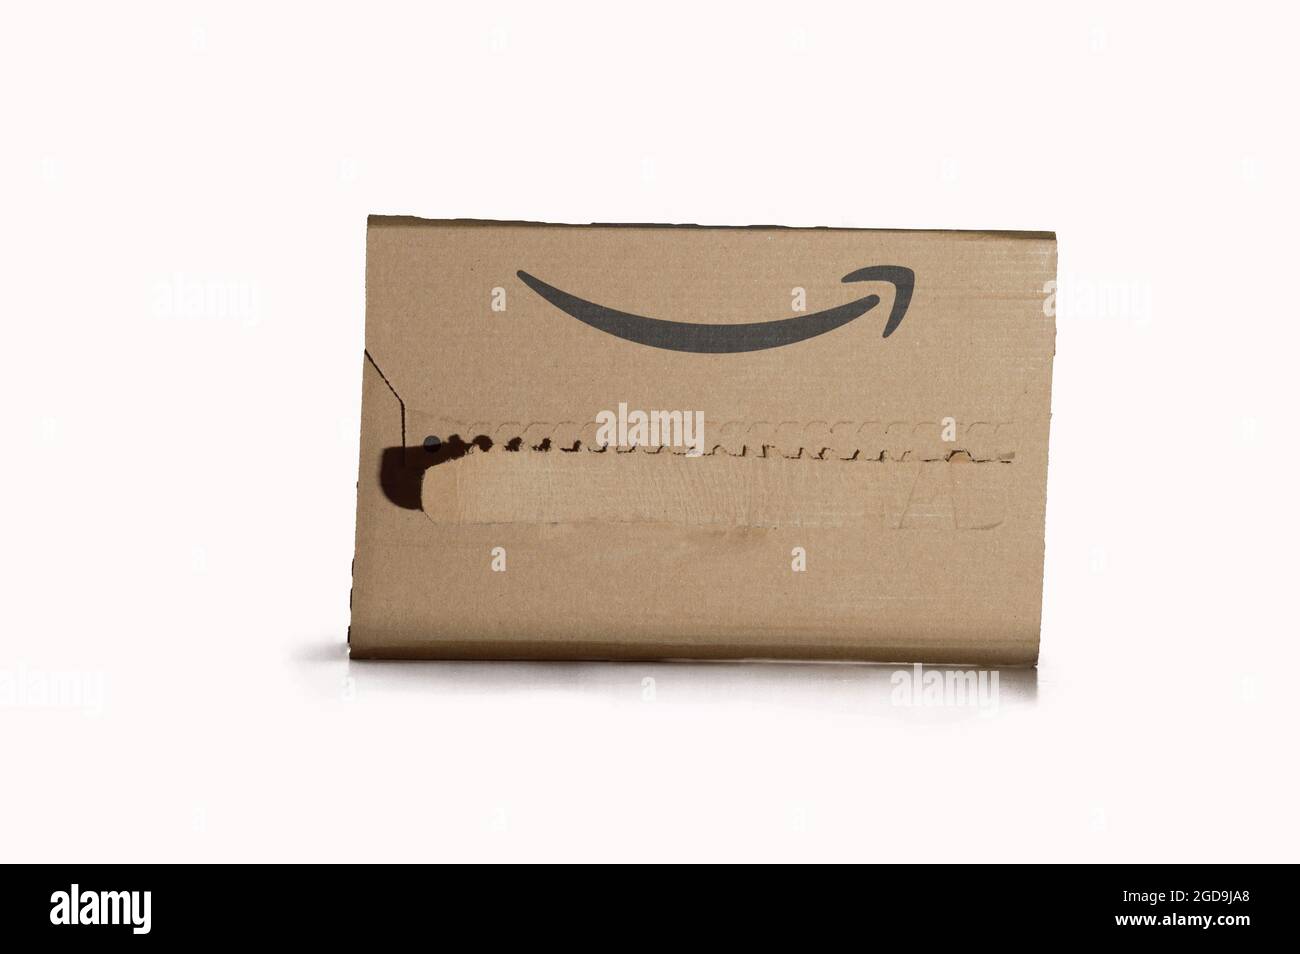 PALMA DE MALLORCA, SPANIEN - 09. Aug 2021: Amazon Prime Paket auf weißem  Hintergrund. Amazon Online-Service für den schnellen Kauf und Versand von  Bestellungen Stockfotografie - Alamy